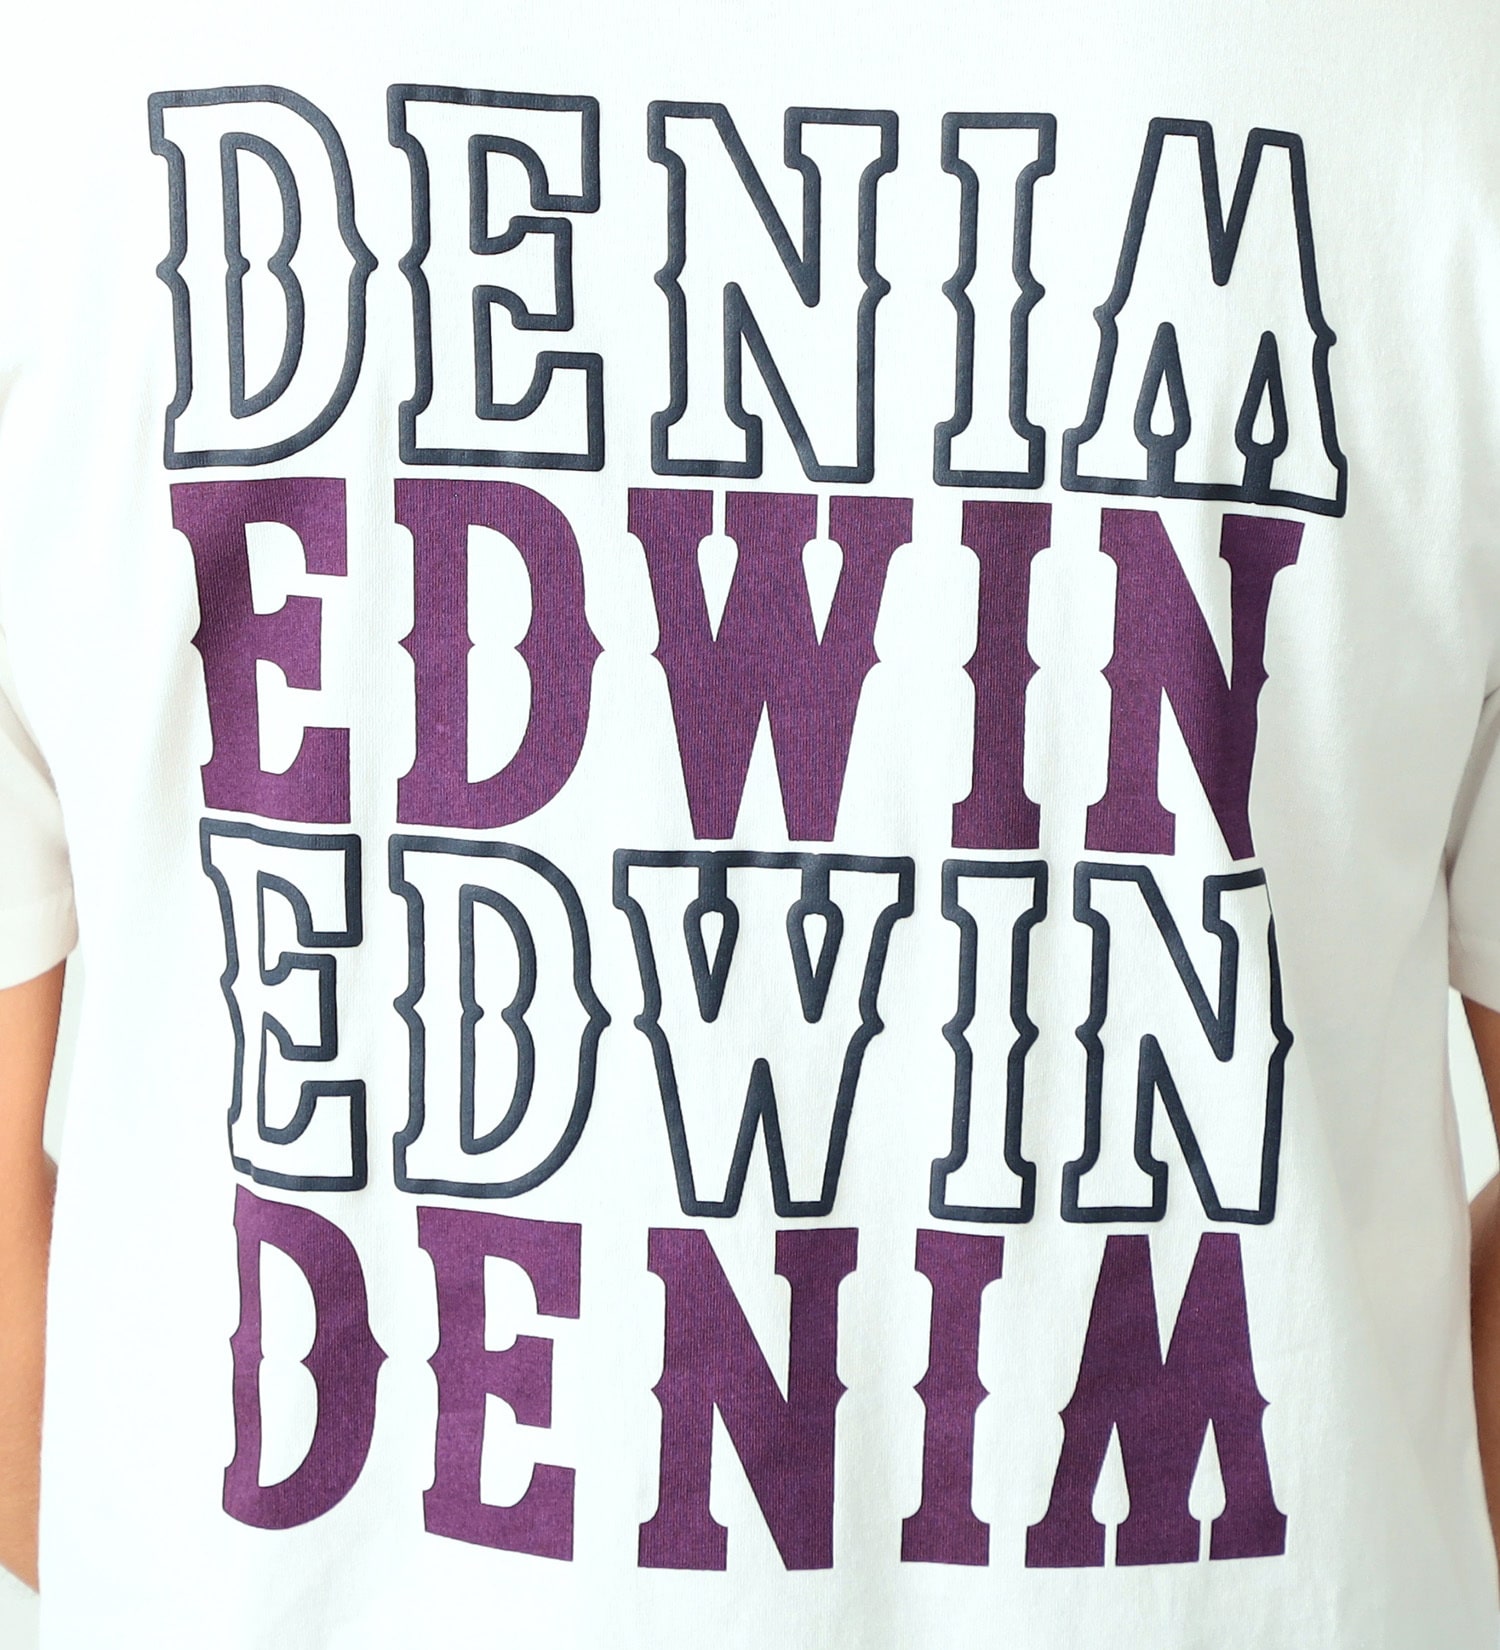 EDWIN(エドウイン)のロゴプリント半袖Tシャツ【アウトレット店舗・WEB限定】|トップス/Tシャツ/カットソー/メンズ|ホワイト